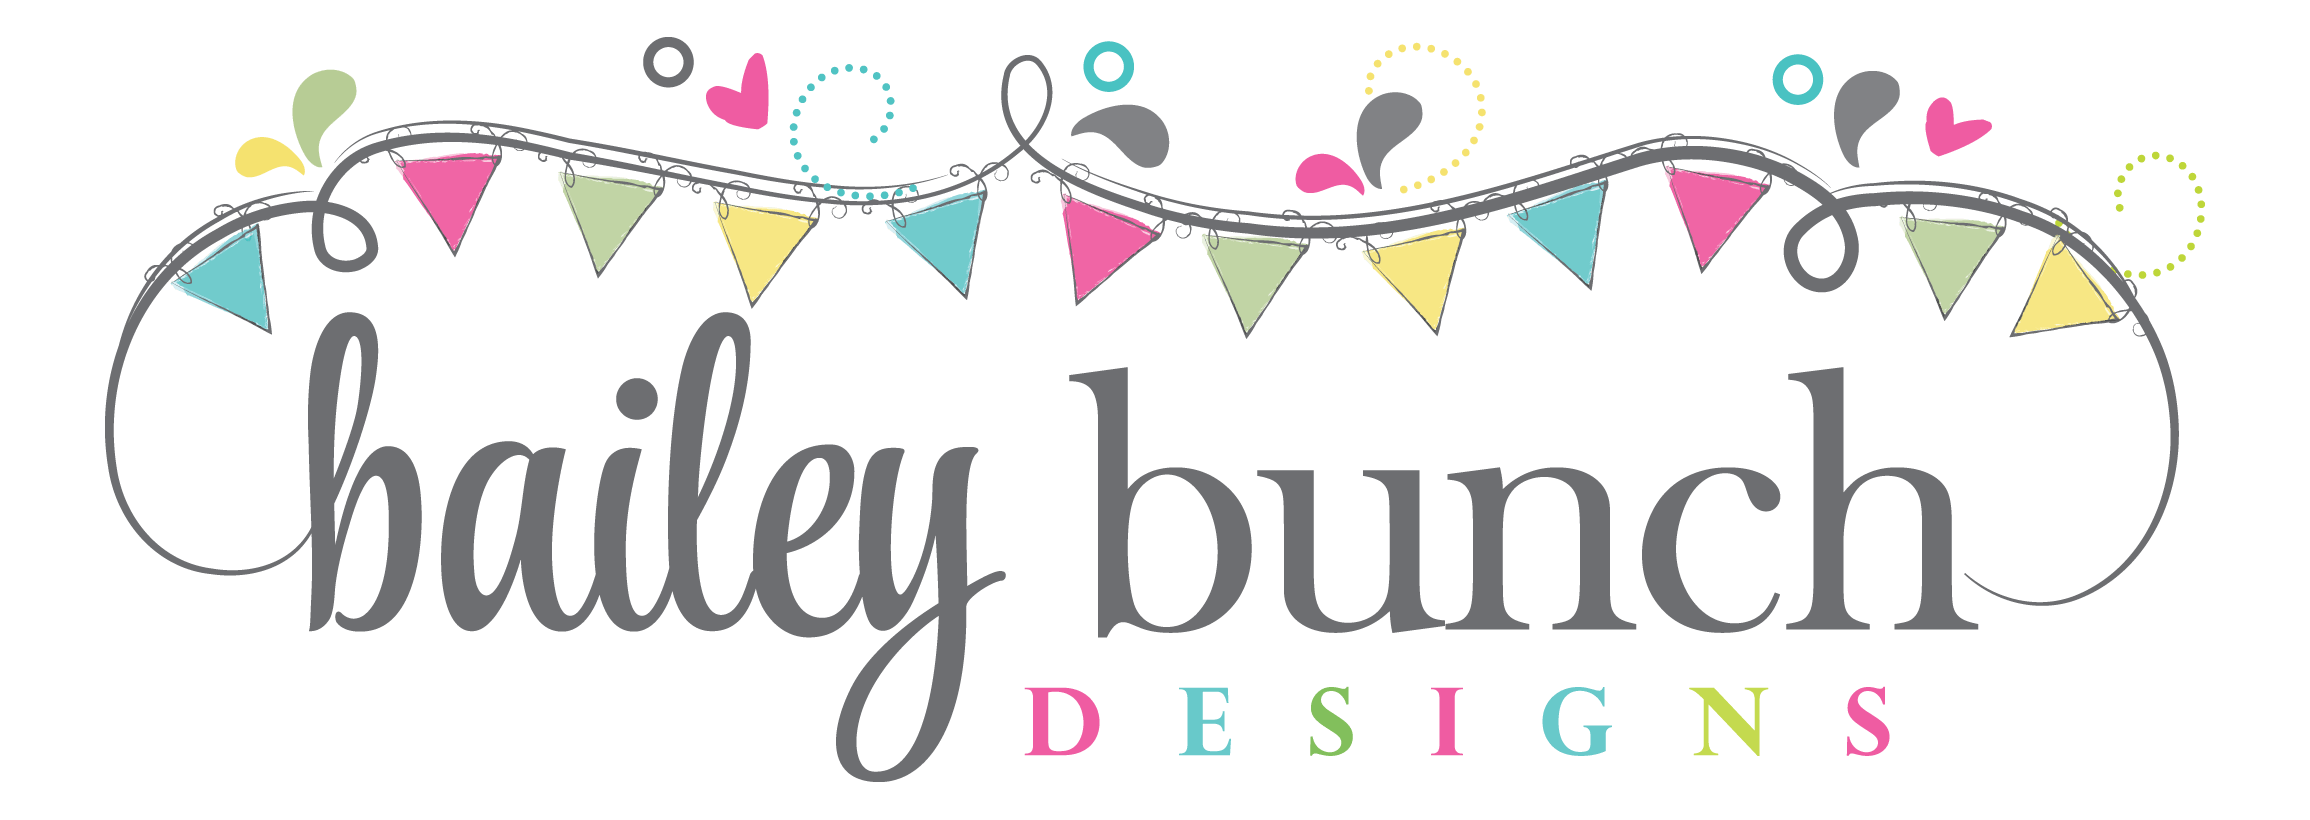 Bailey Bunch Designs